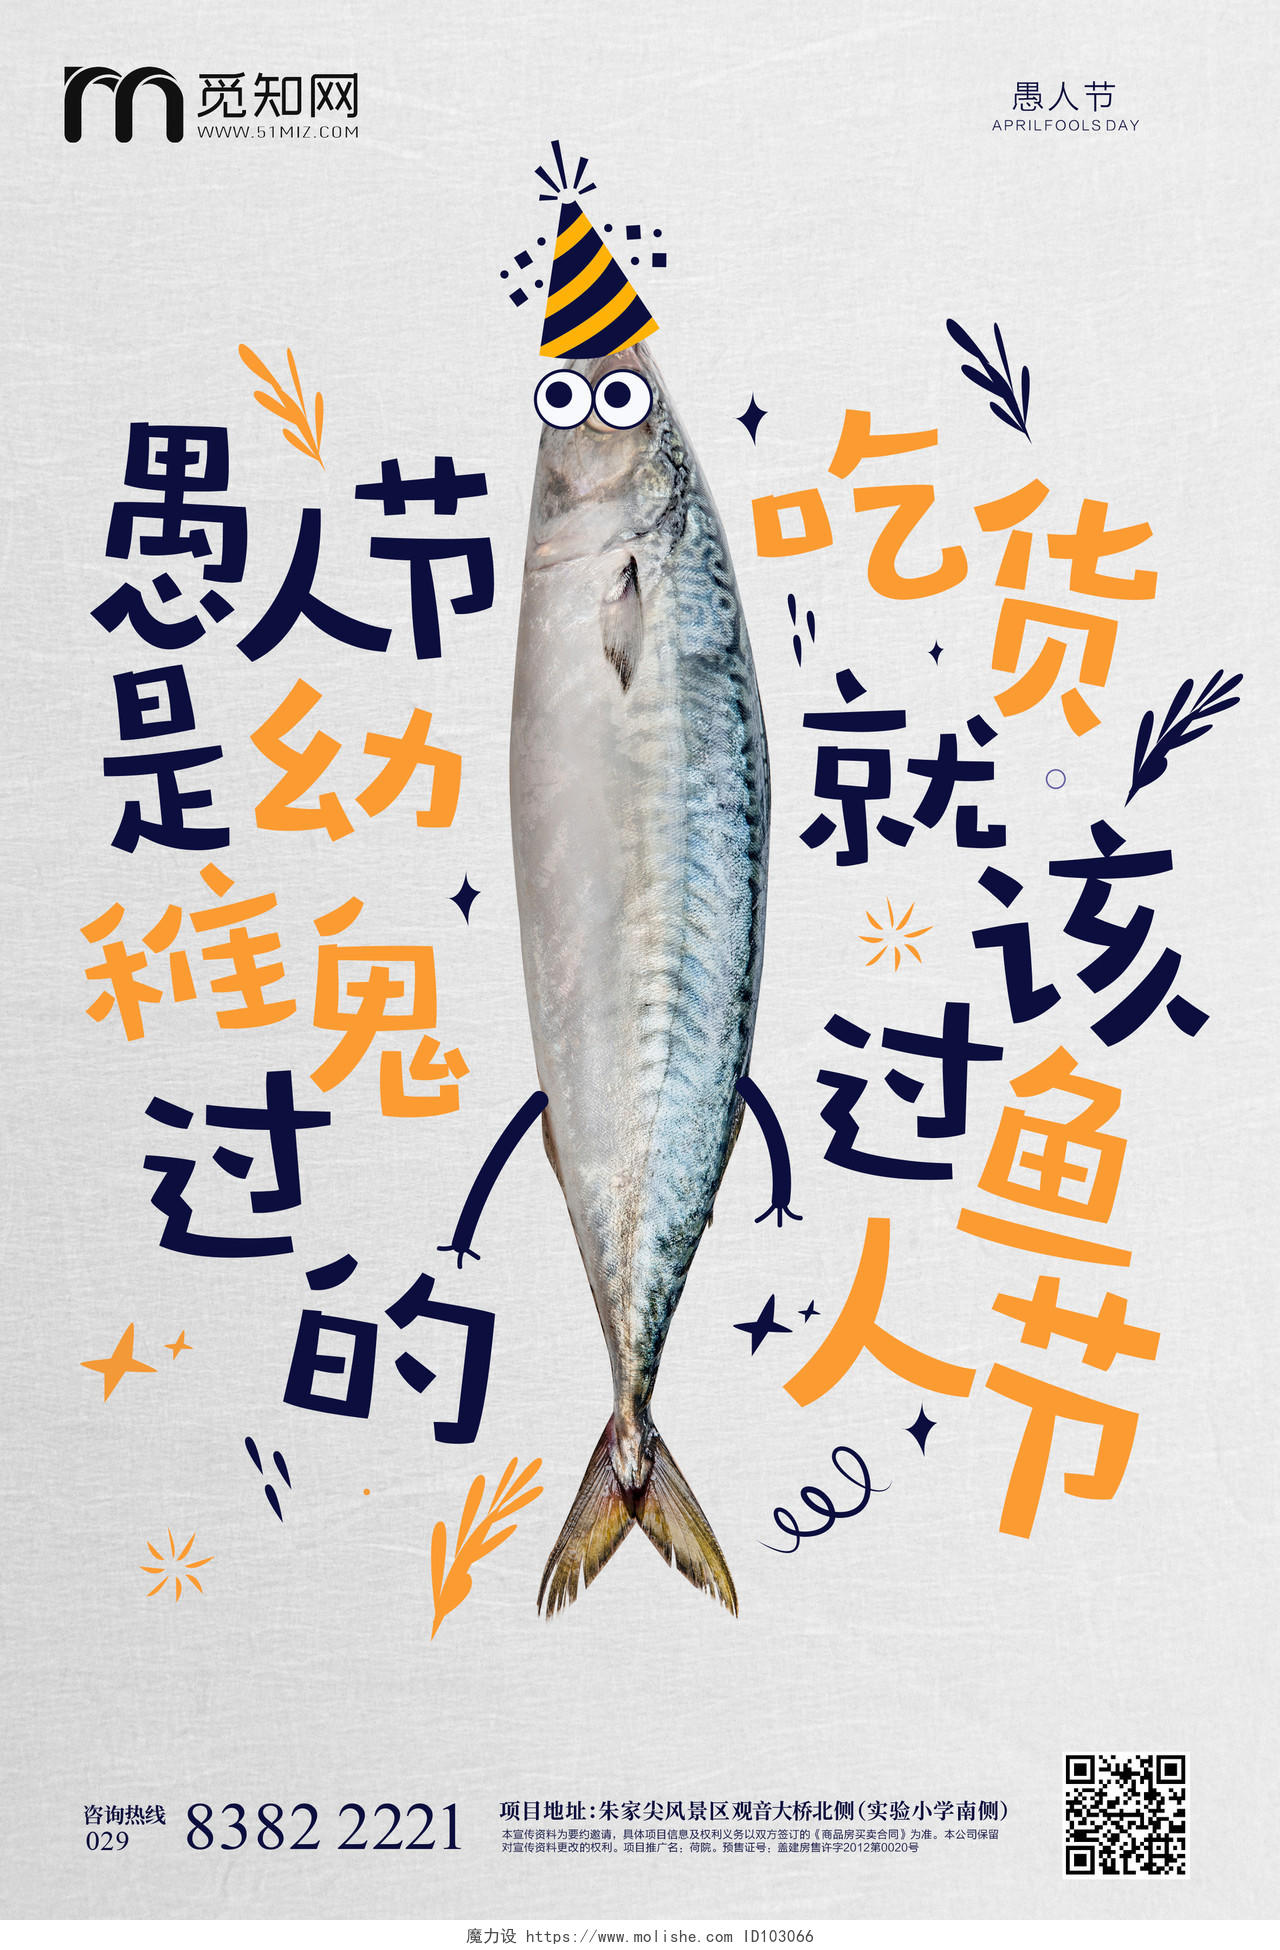 愚人节咸鱼活动创意海报